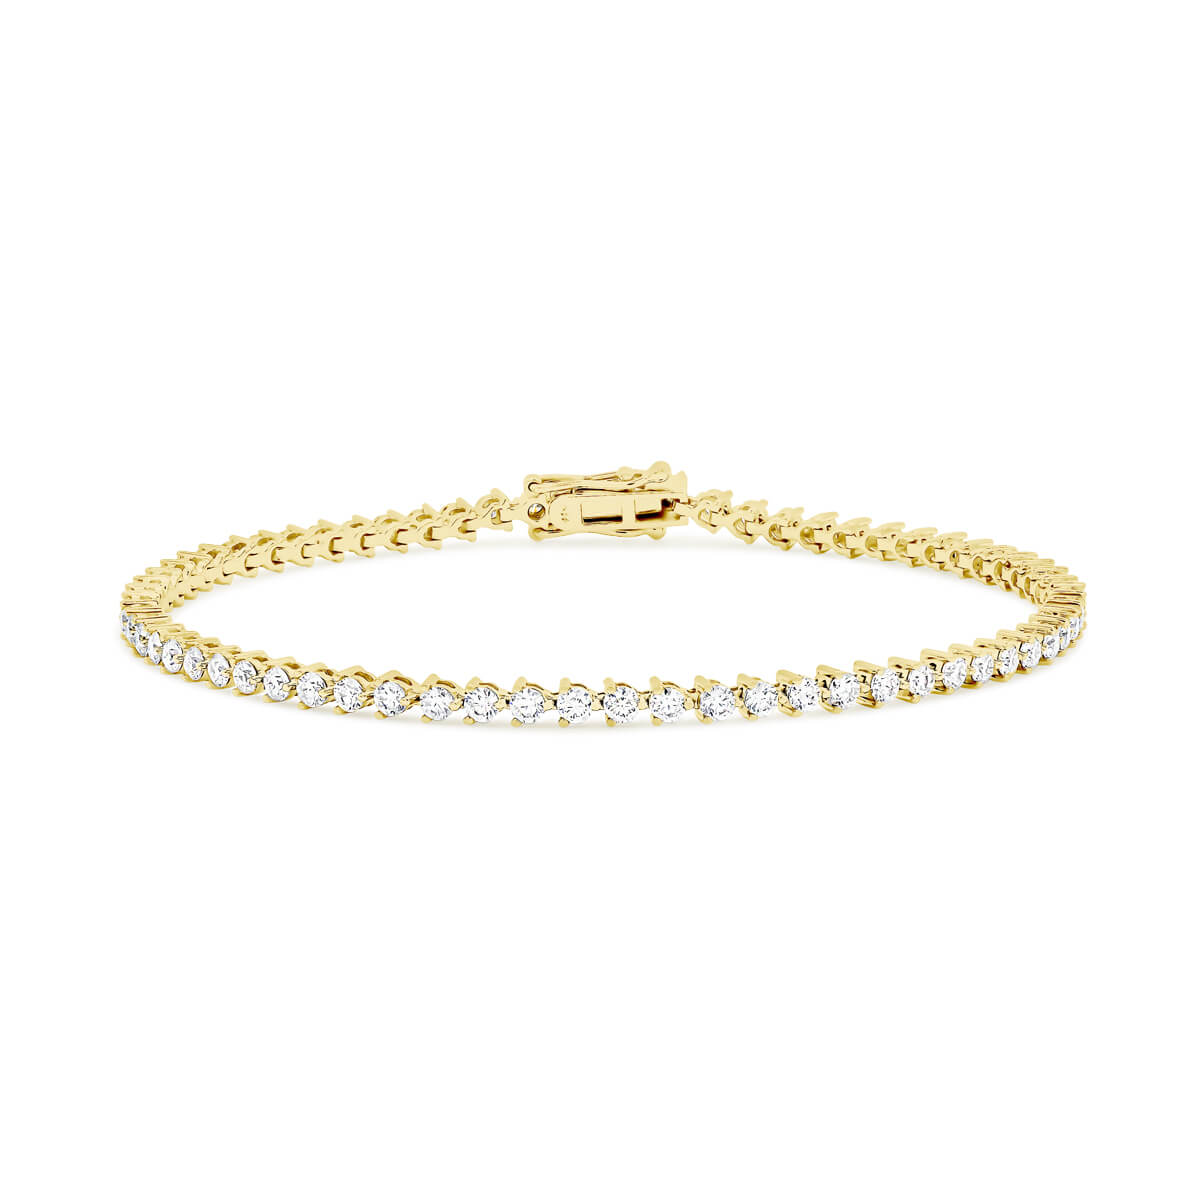 Macys Diamond Bracelet in 10k Gold 5 ct tw  Reviews  Bracelets   Jewelry  Watches  Macys